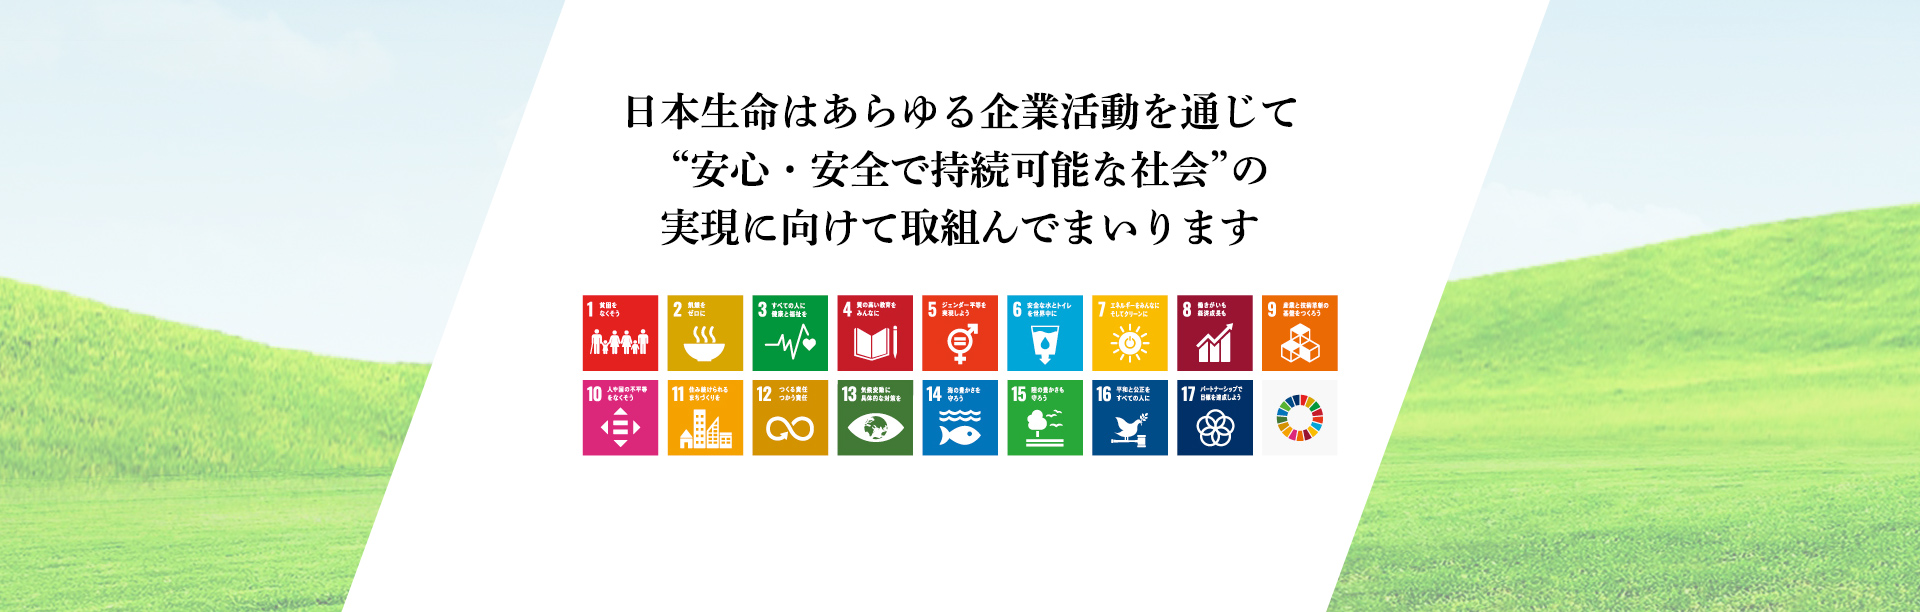 日本生命はあらゆる企業活動を通じて“安心・安全で持続可能な社会”の実現に向けて取組んでまいります